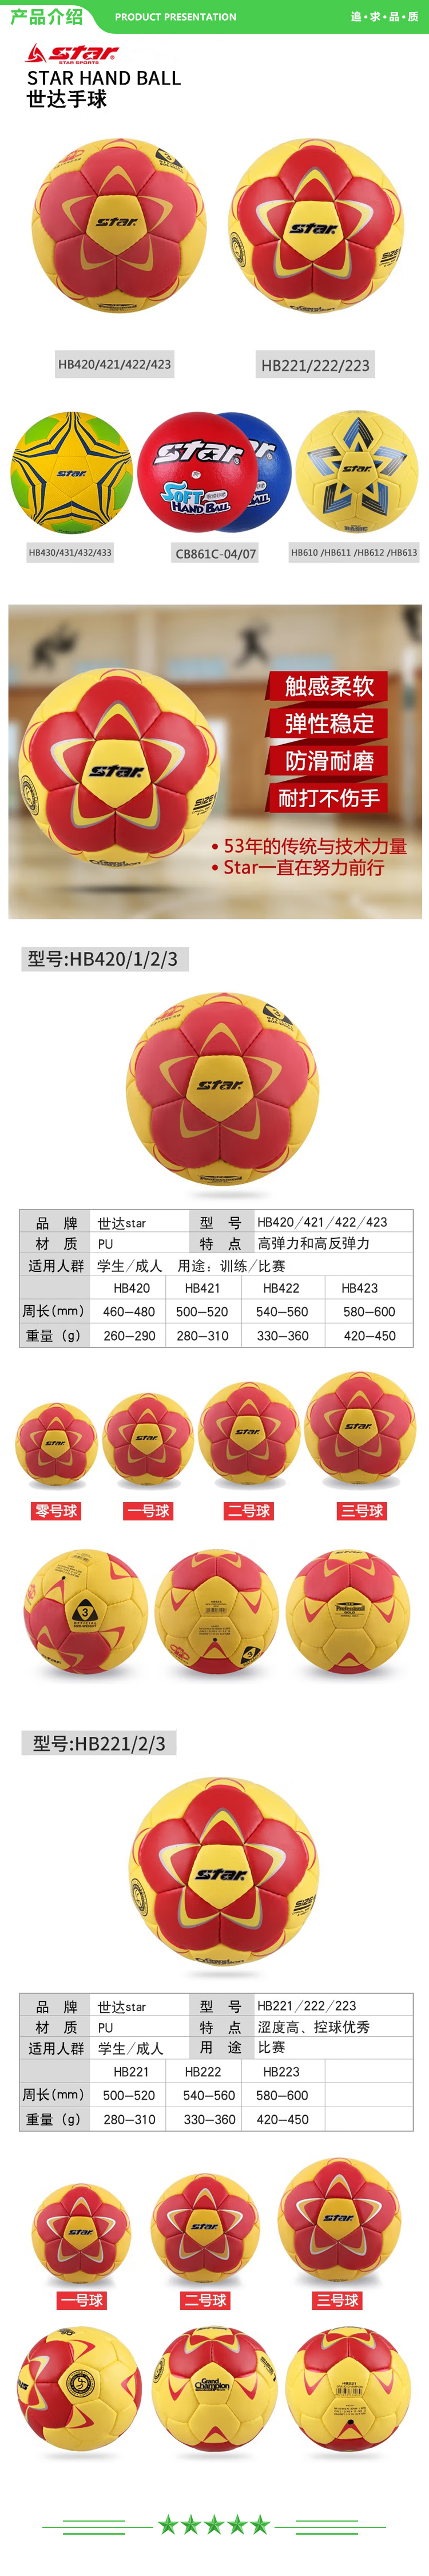 世达 star HB420 零号球 手球比赛用球防滑pu材质舒适控球比赛训练用球 .jpg